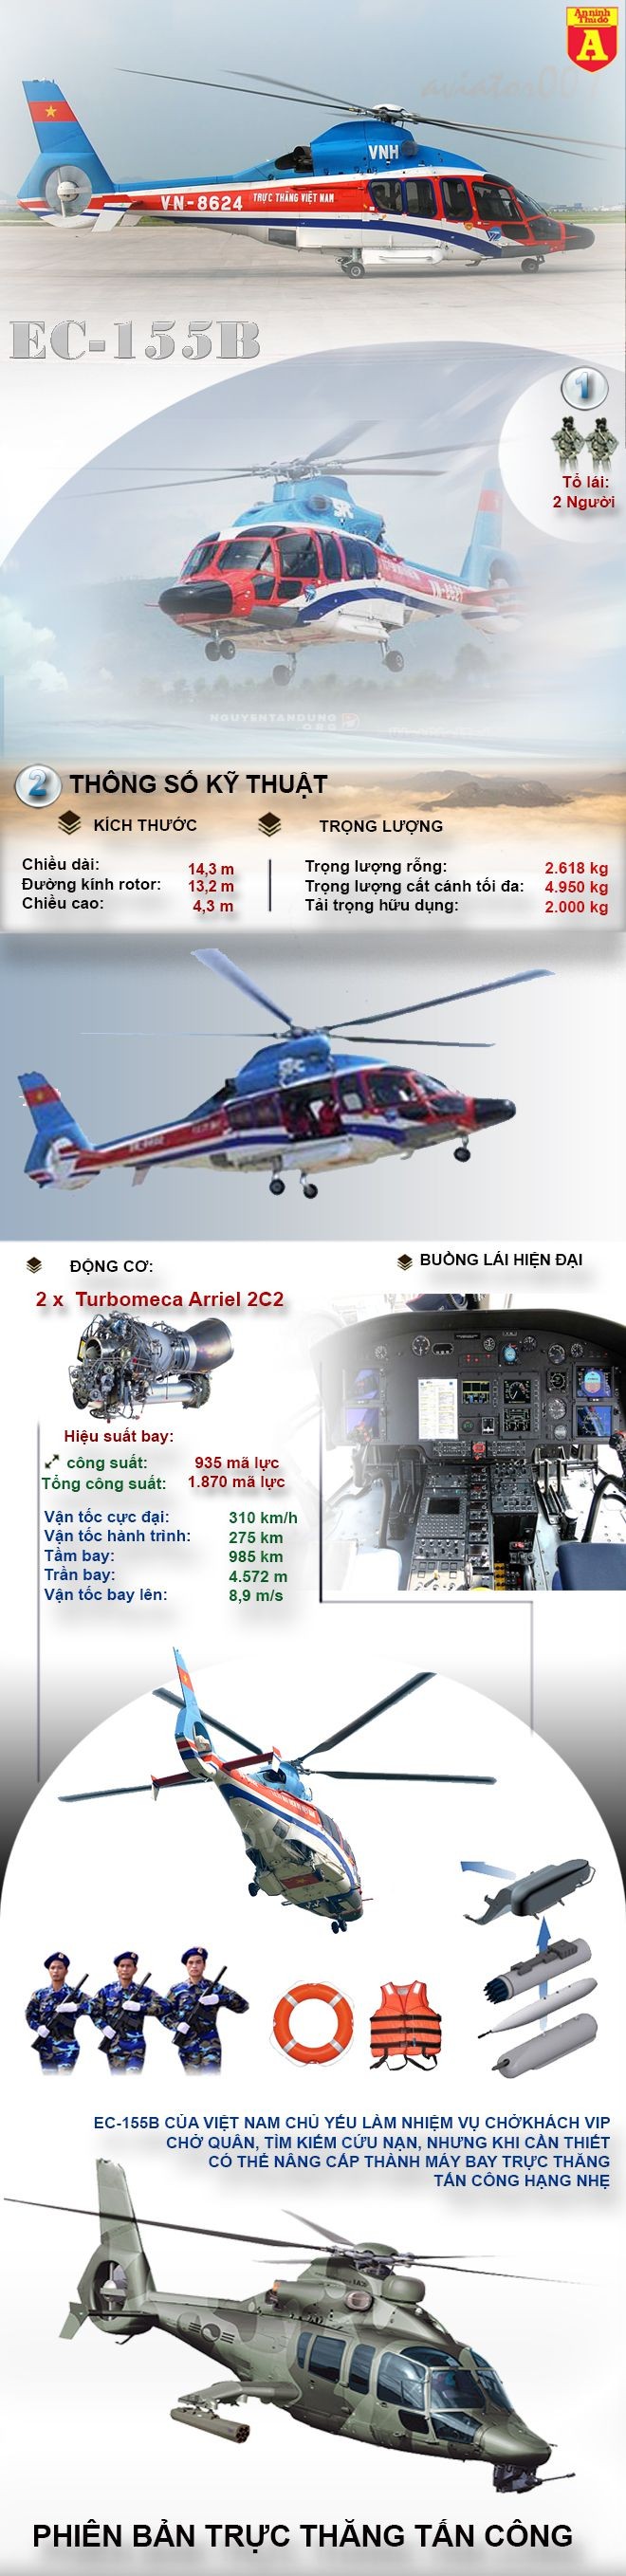 [Infographic] EC-155B – Trực thăng đa năng hạng nhẹ hiện đại của Việt Nam ảnh 1